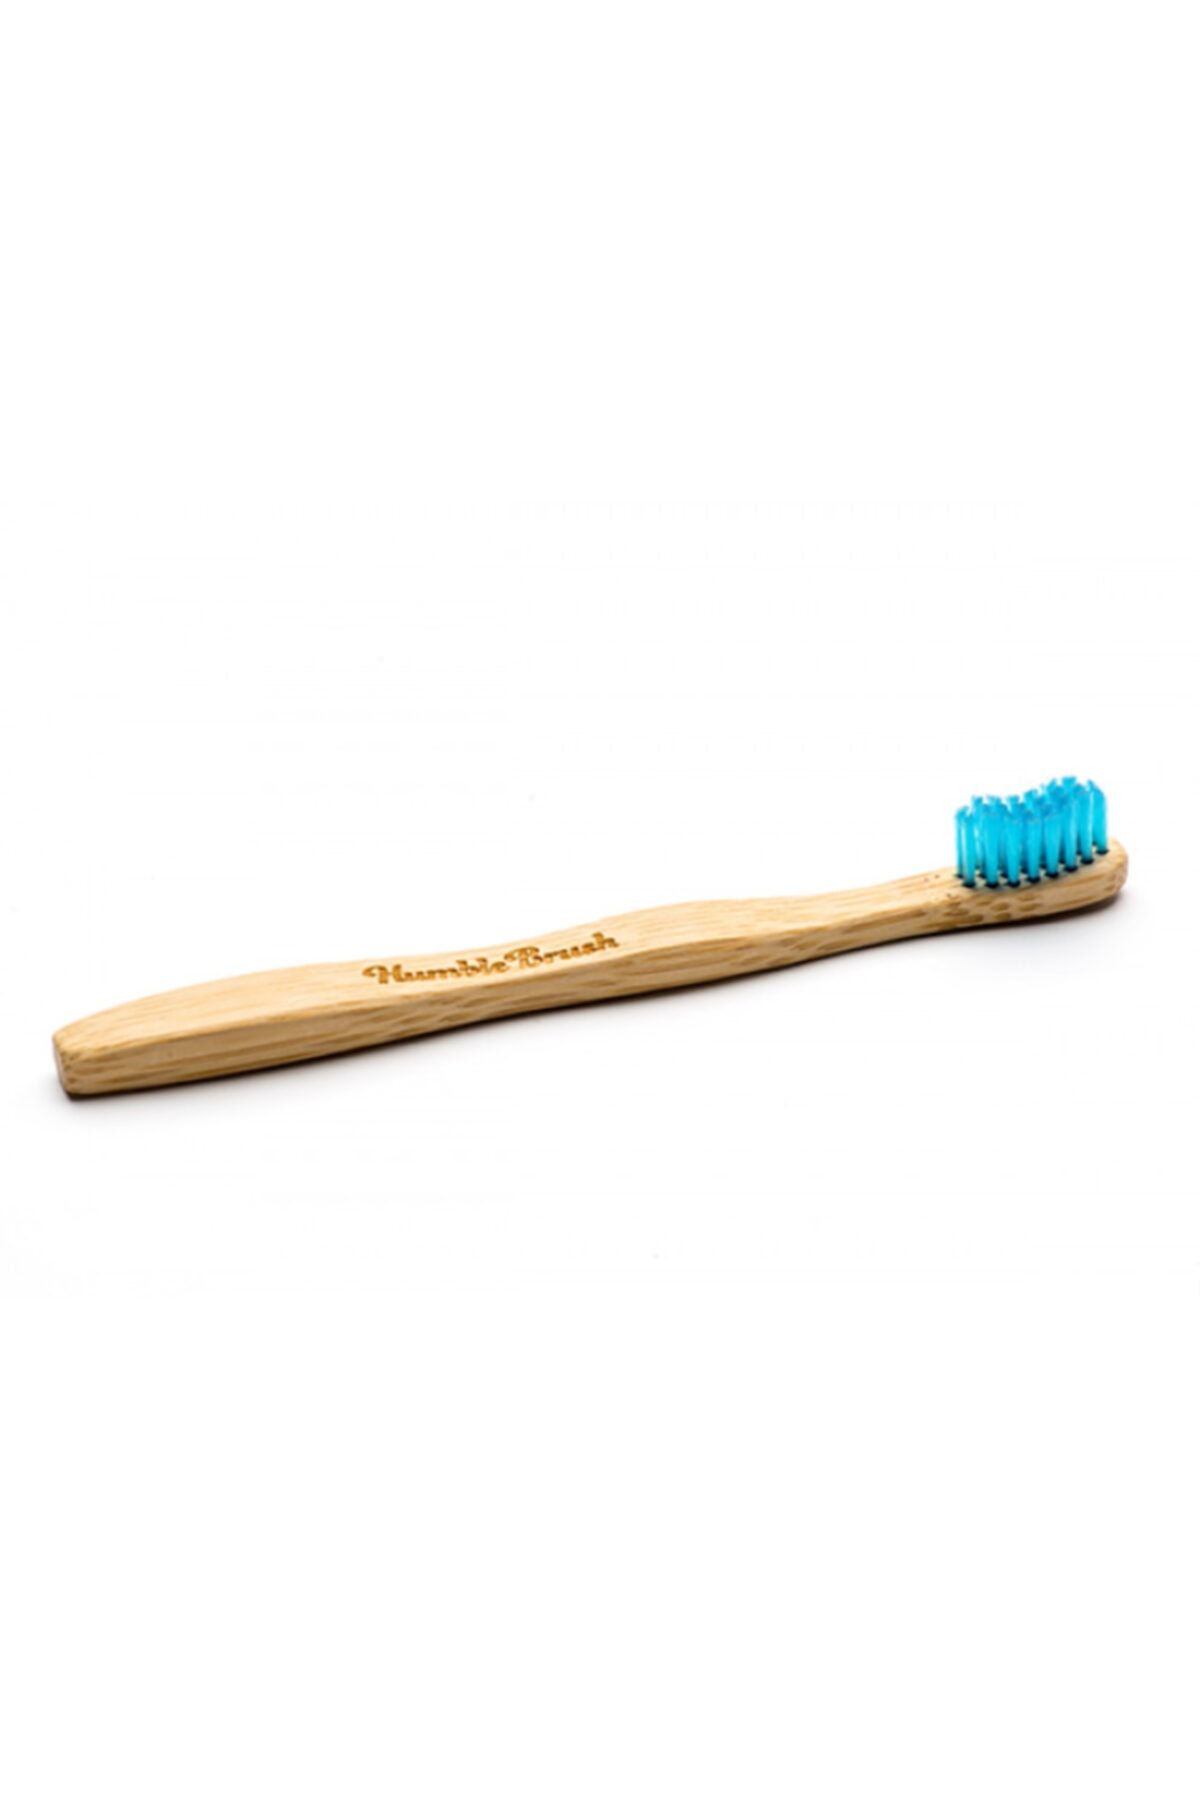 Humble Brush - Yetişkin Diş Fırçası Mavi - Soft